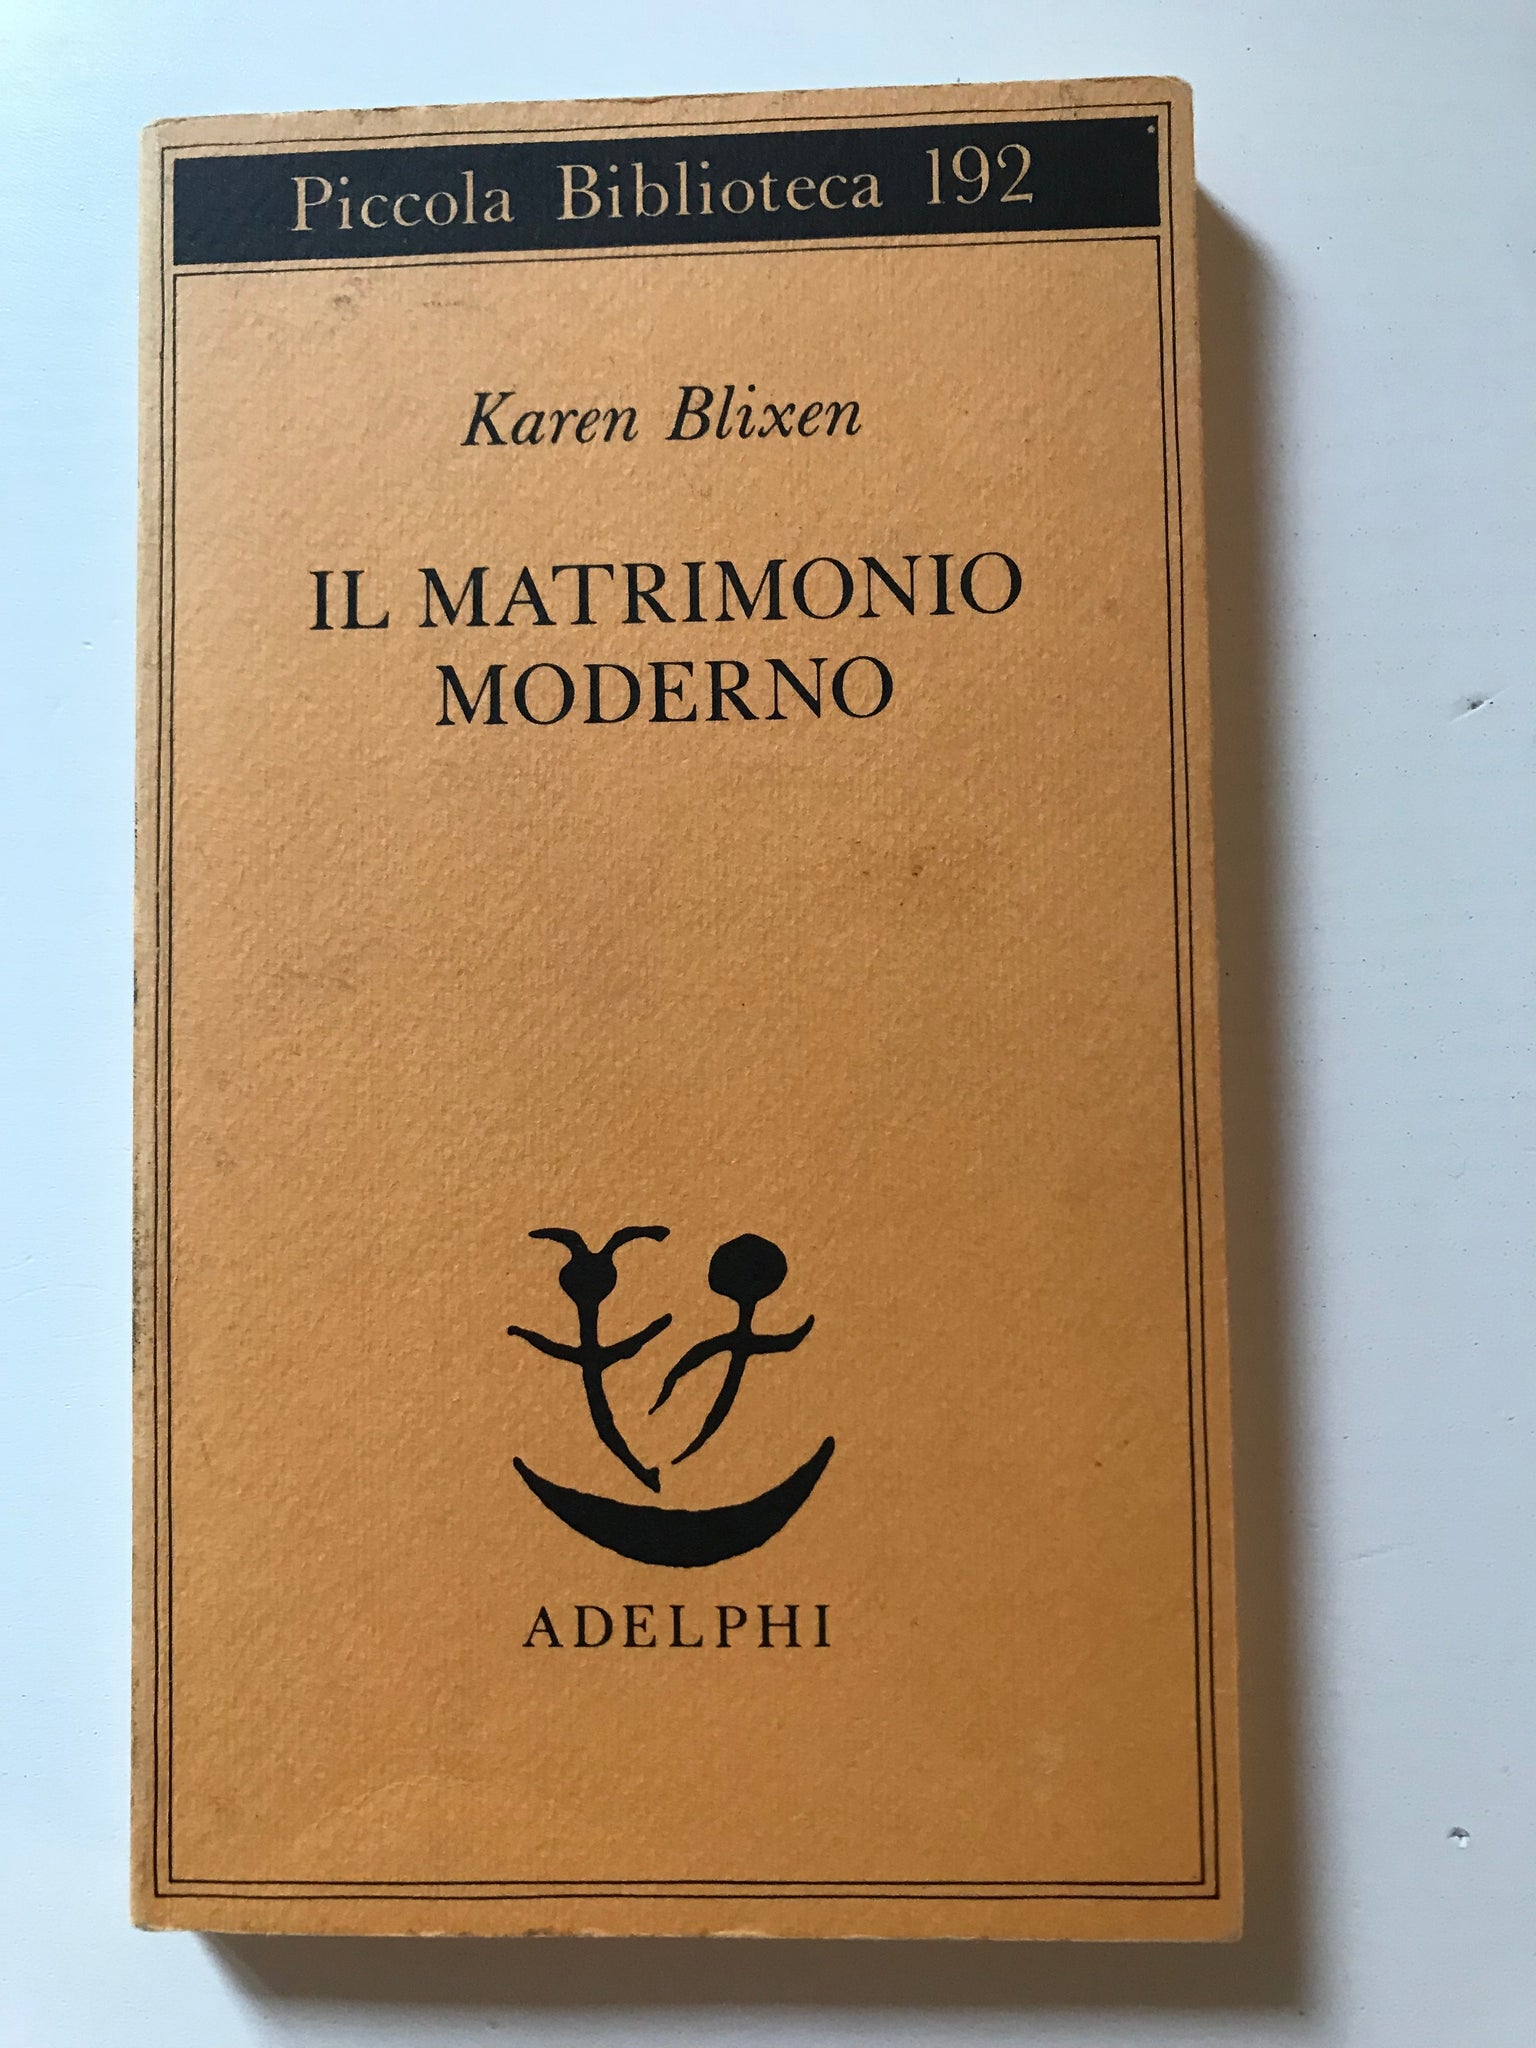 Karen Blixen - Il matrimonio moderno